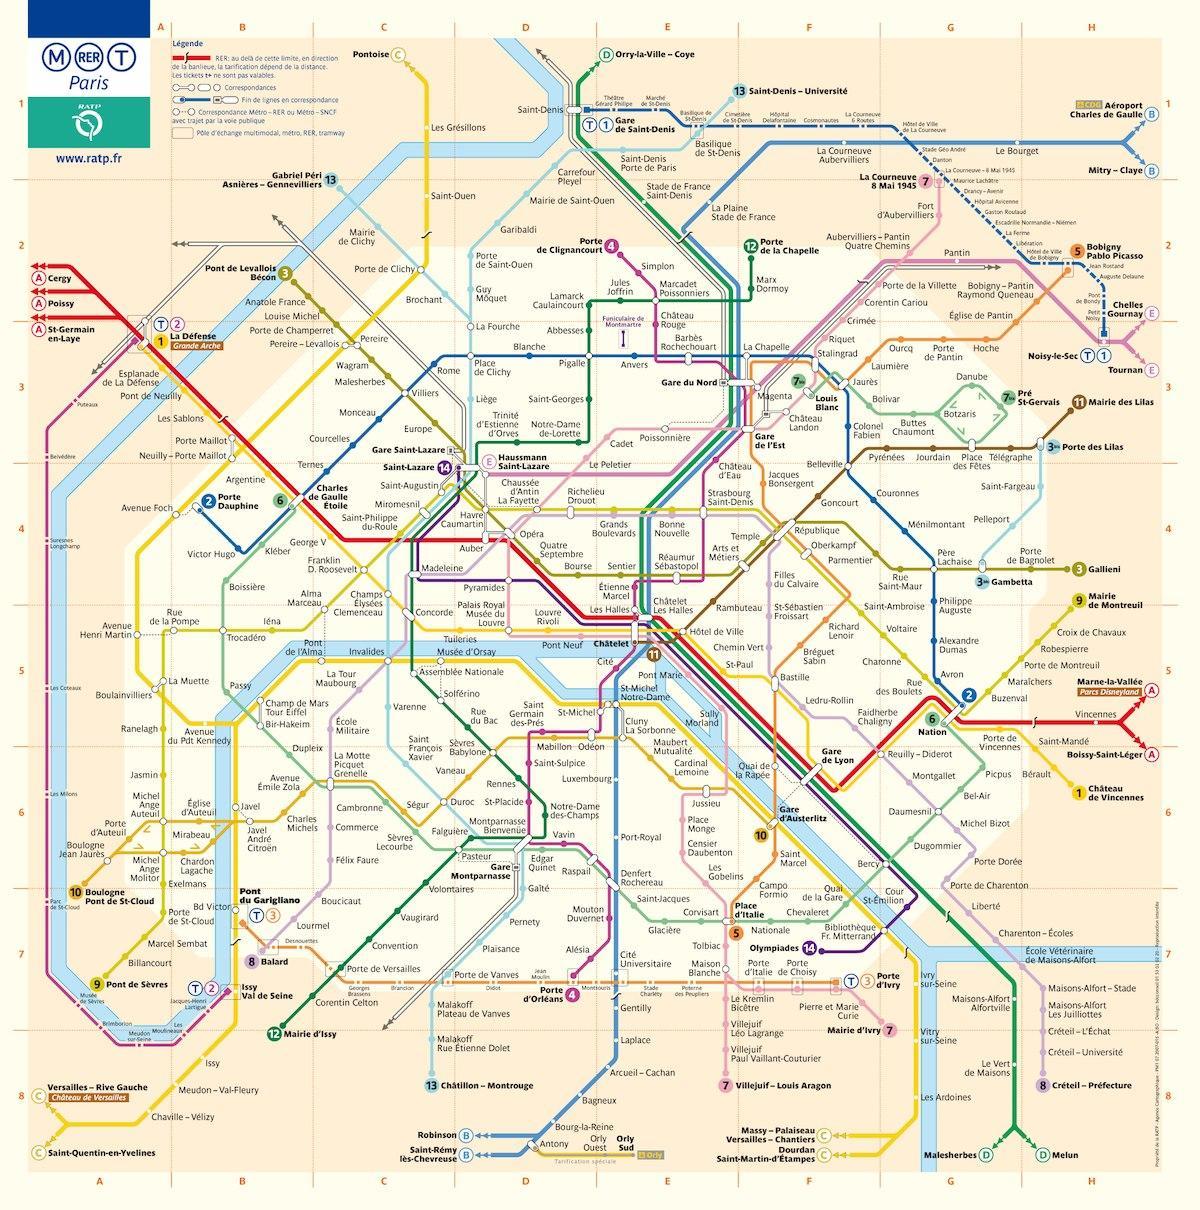 washington dc metro mapa sa ulice